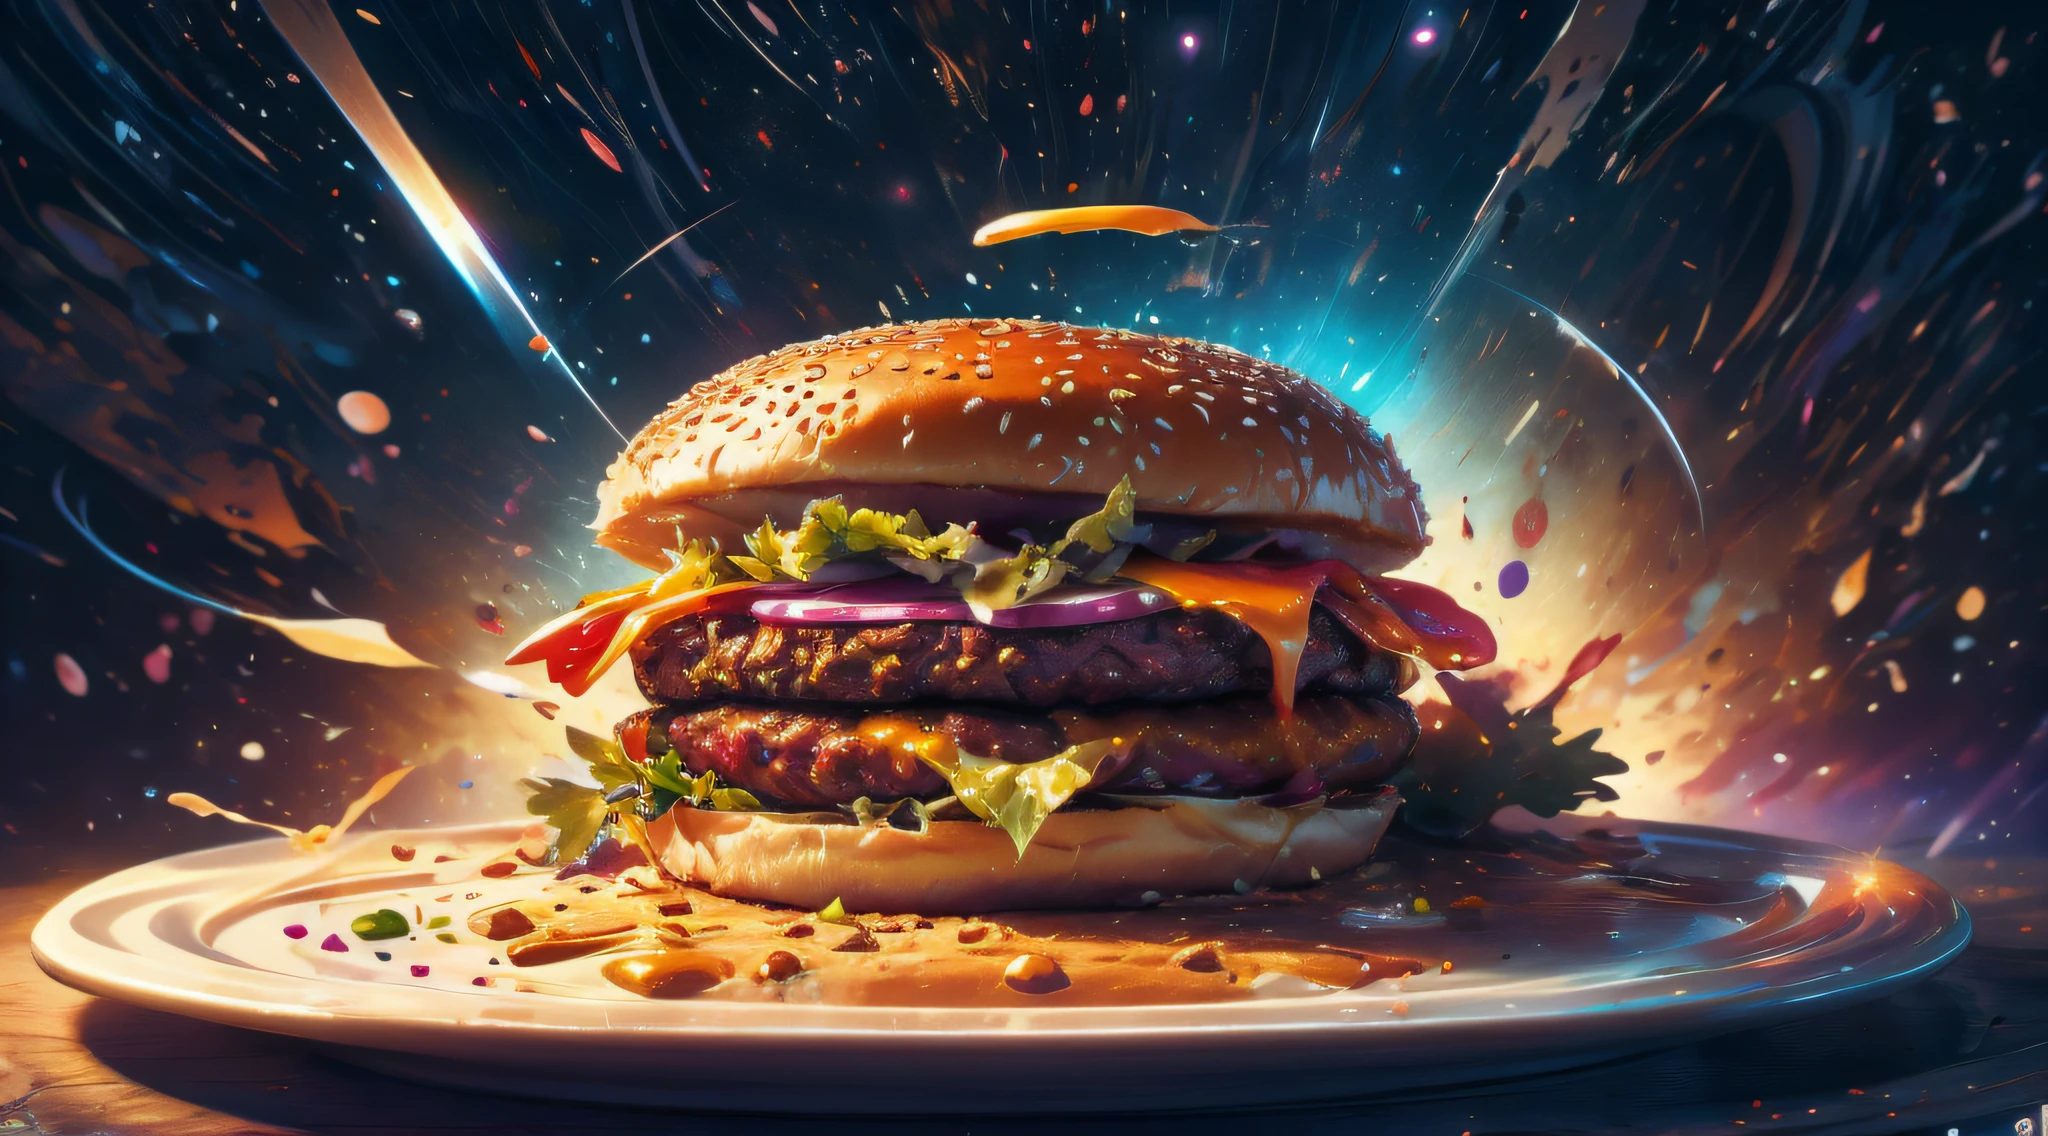 una hamburguesa hecha de galaxia y nebulosa, sentado en un plato hecho de cosmos, Regla de los tercios, Mejores detalles, intrincado, rico humor, foto imaginativa,